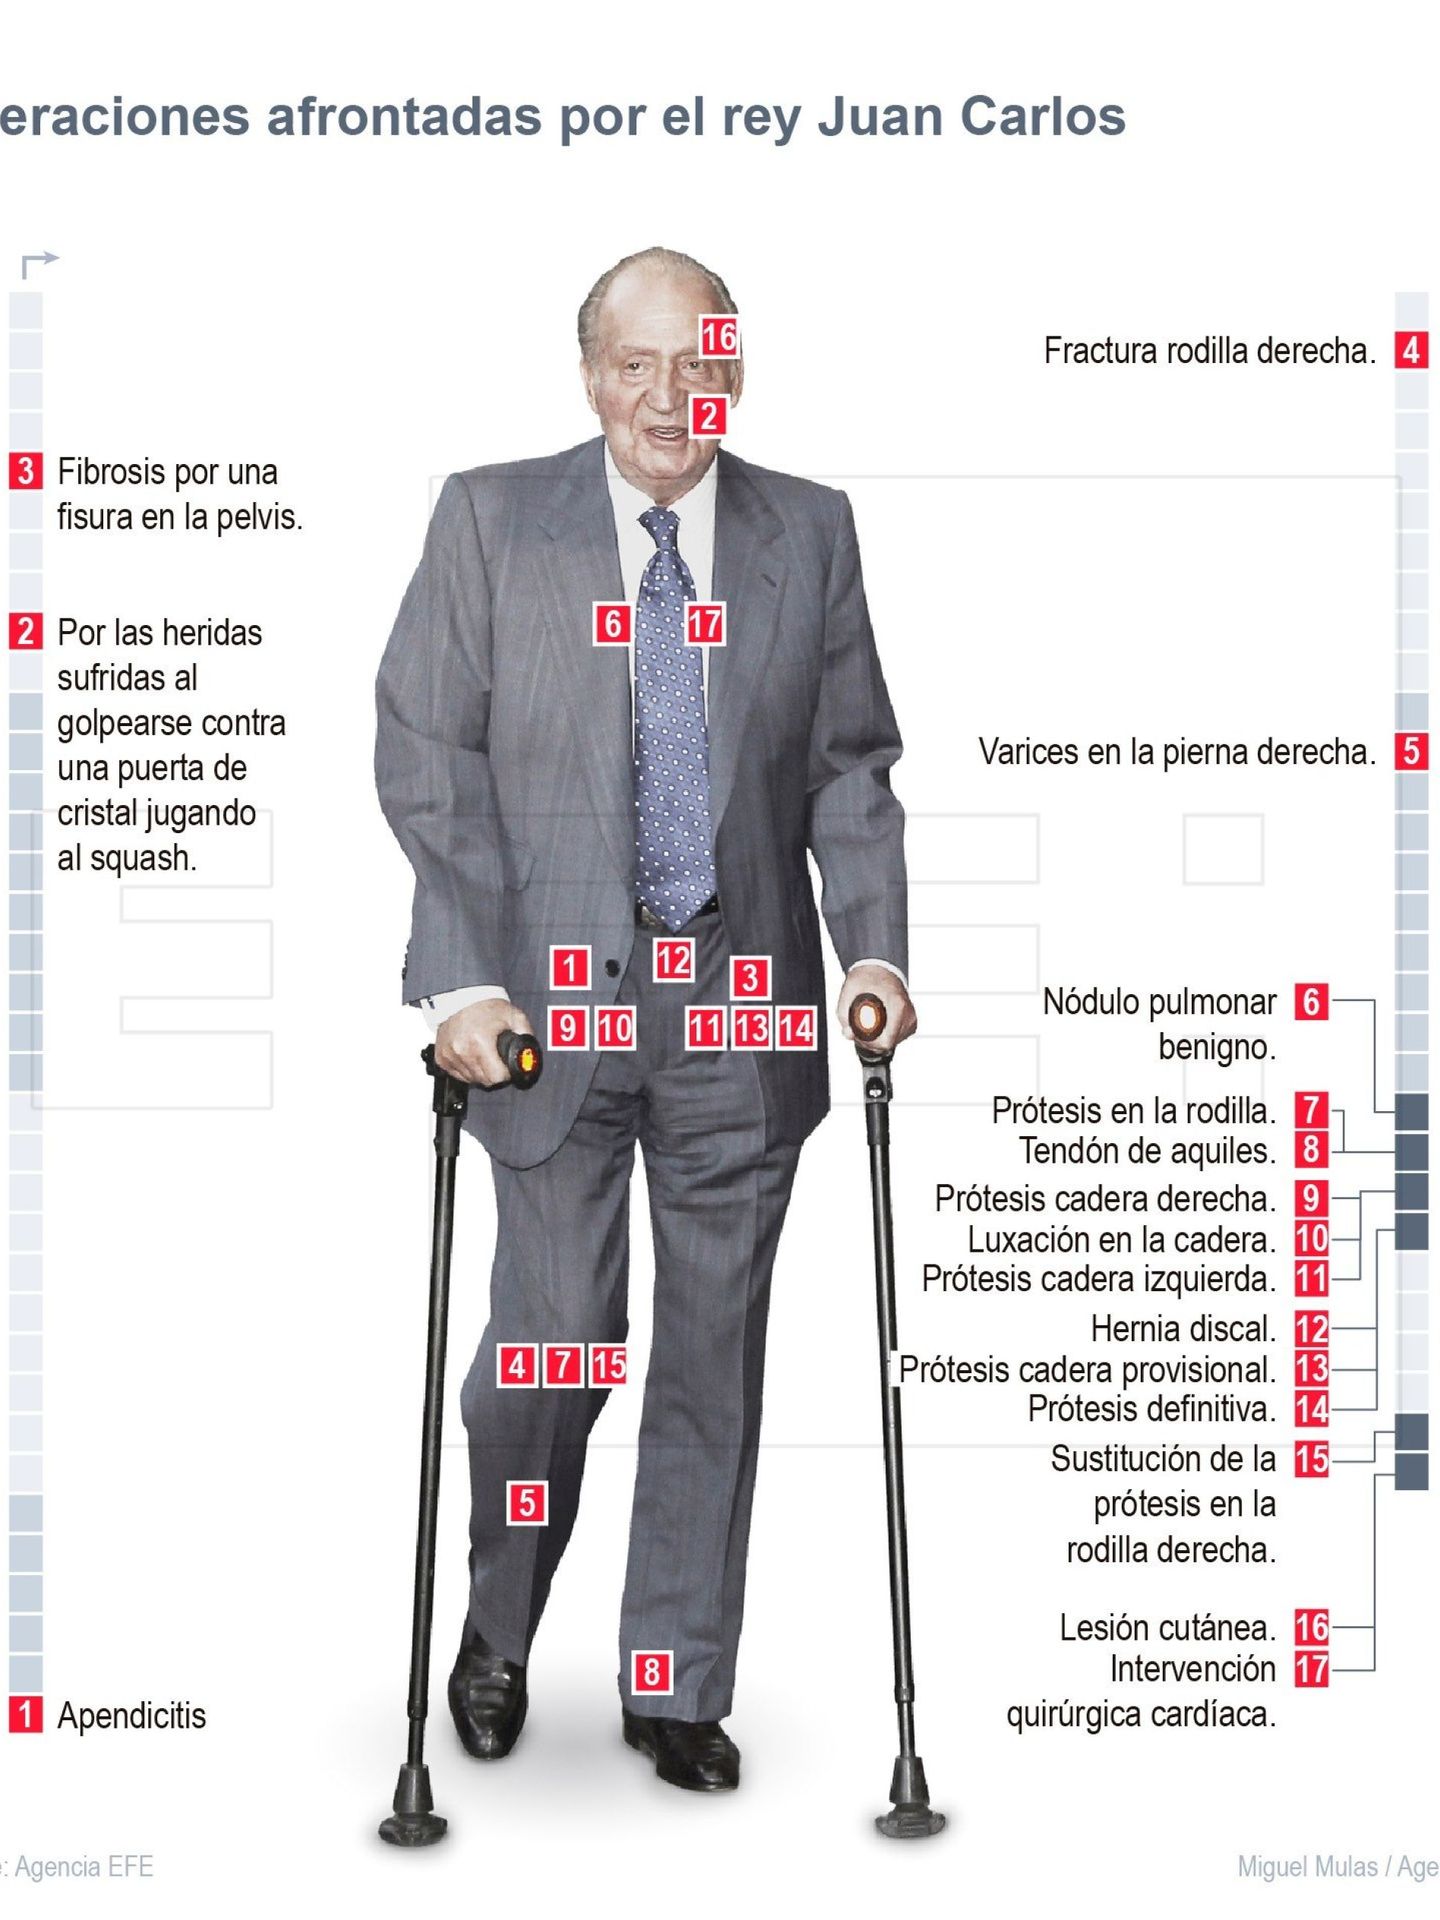 Detalle de la infografía de la Agencia EFE 'Operaciones afrontadas por don Juan Carlos'.